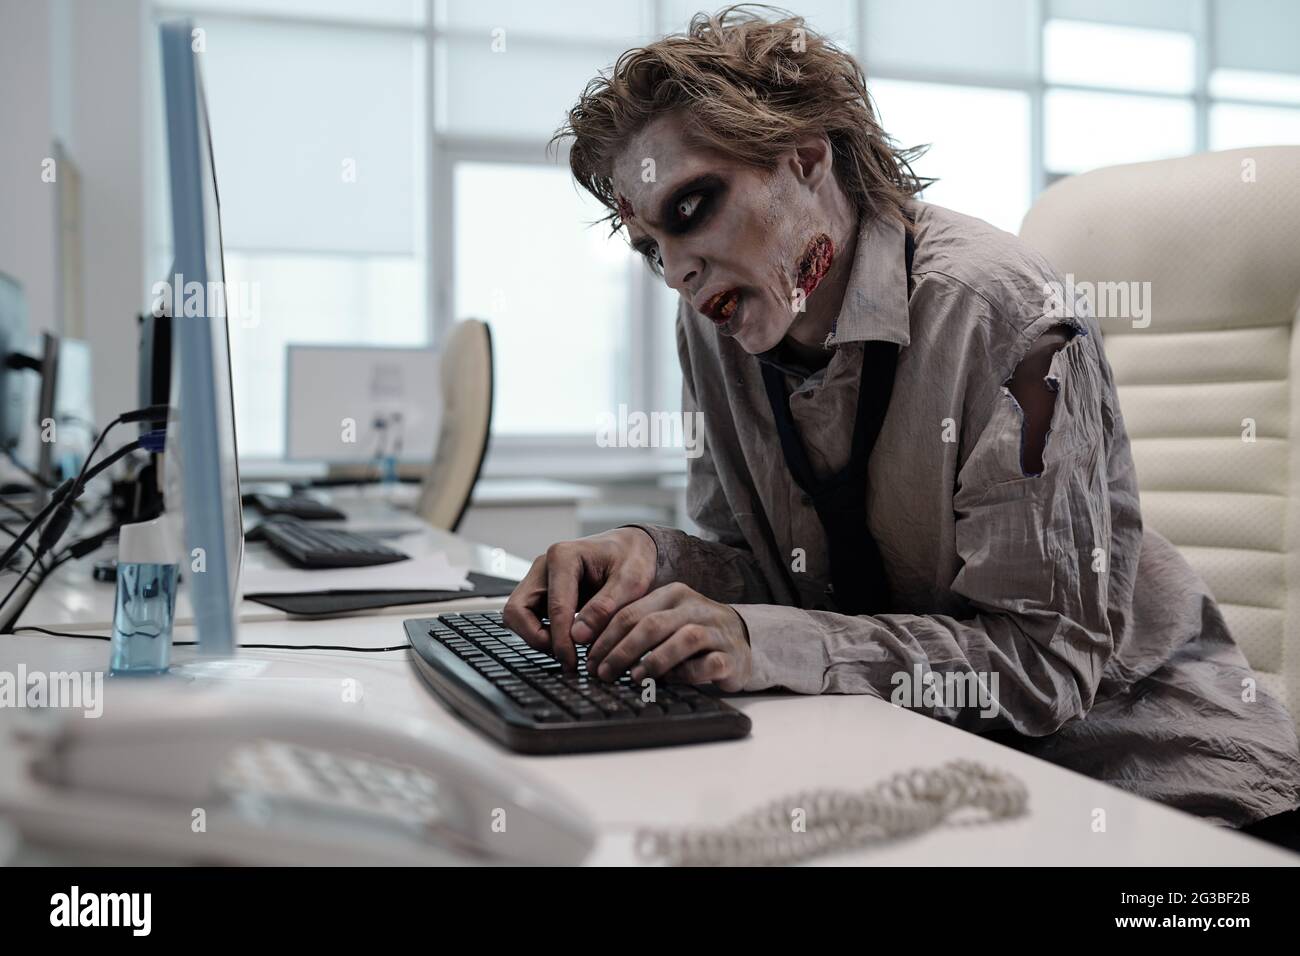 Un homme laid avec un maquillage zombie travaillant avec un ordinateur au bureau Banque D'Images